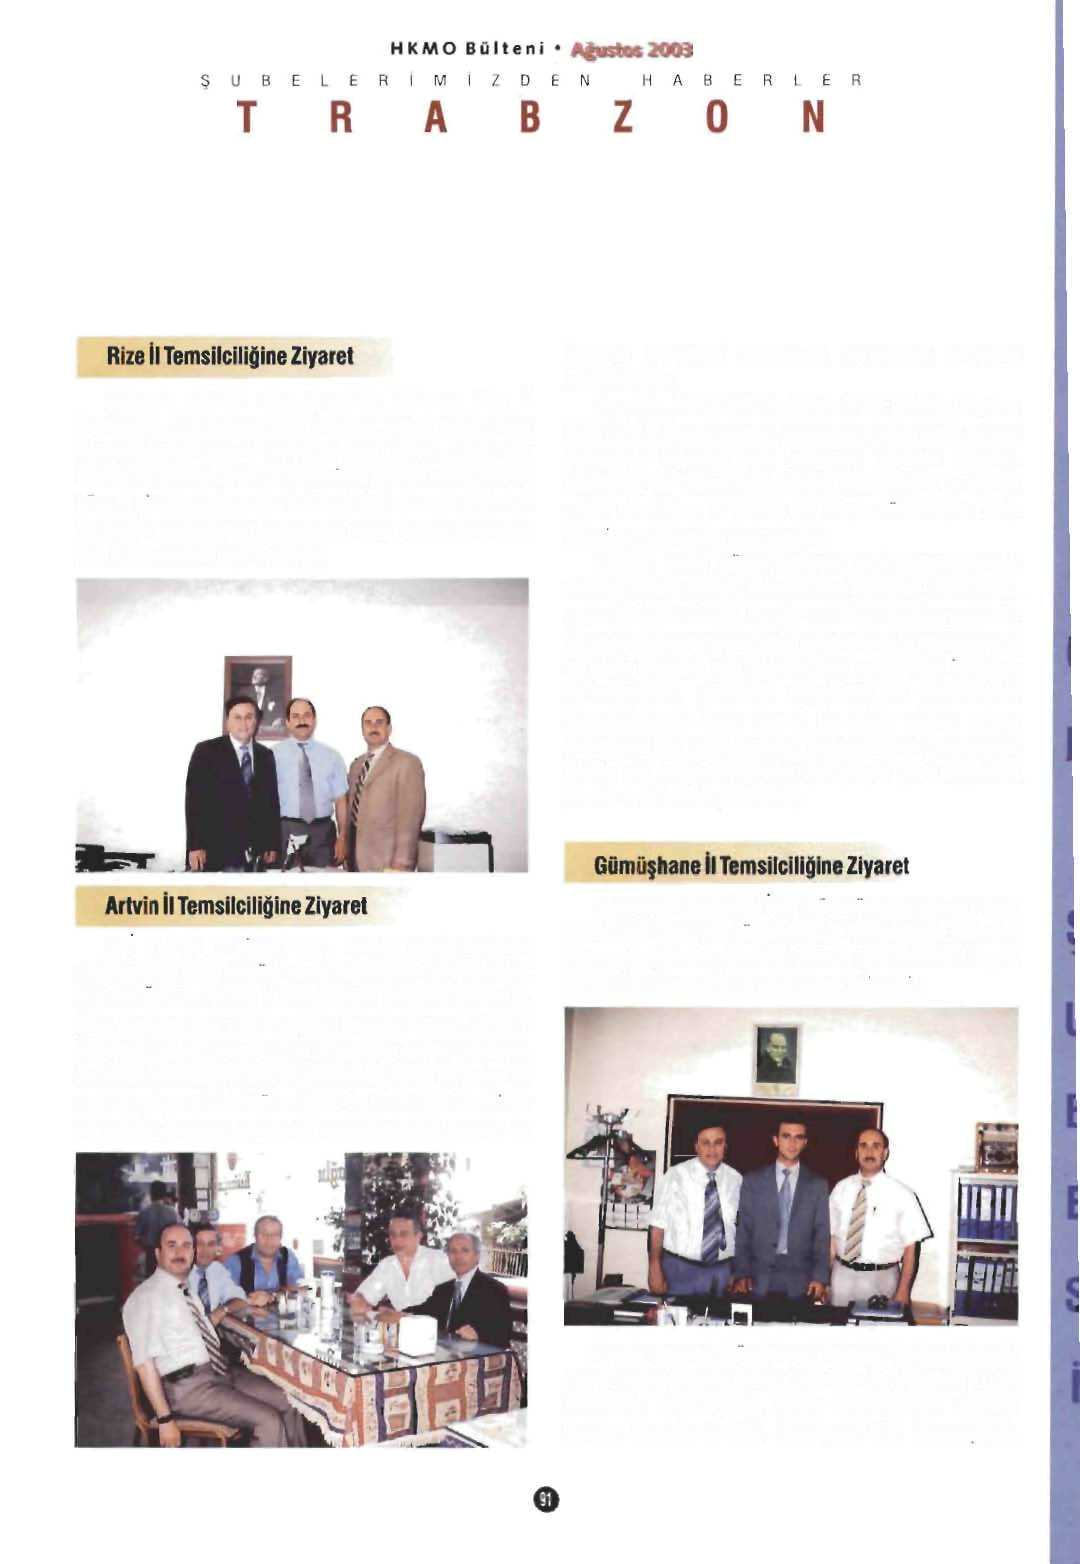 Şubemiz etkinlik alanı içersinde bulunan Rize İl Temsilciliği, 04 Haziran 2003 tarihinde ziyaret edildi. Şuöe Başkanı Suat ATAV ve Şuöe Sekreteri Veysel ATASOVun katıldığı bu ziyarette.